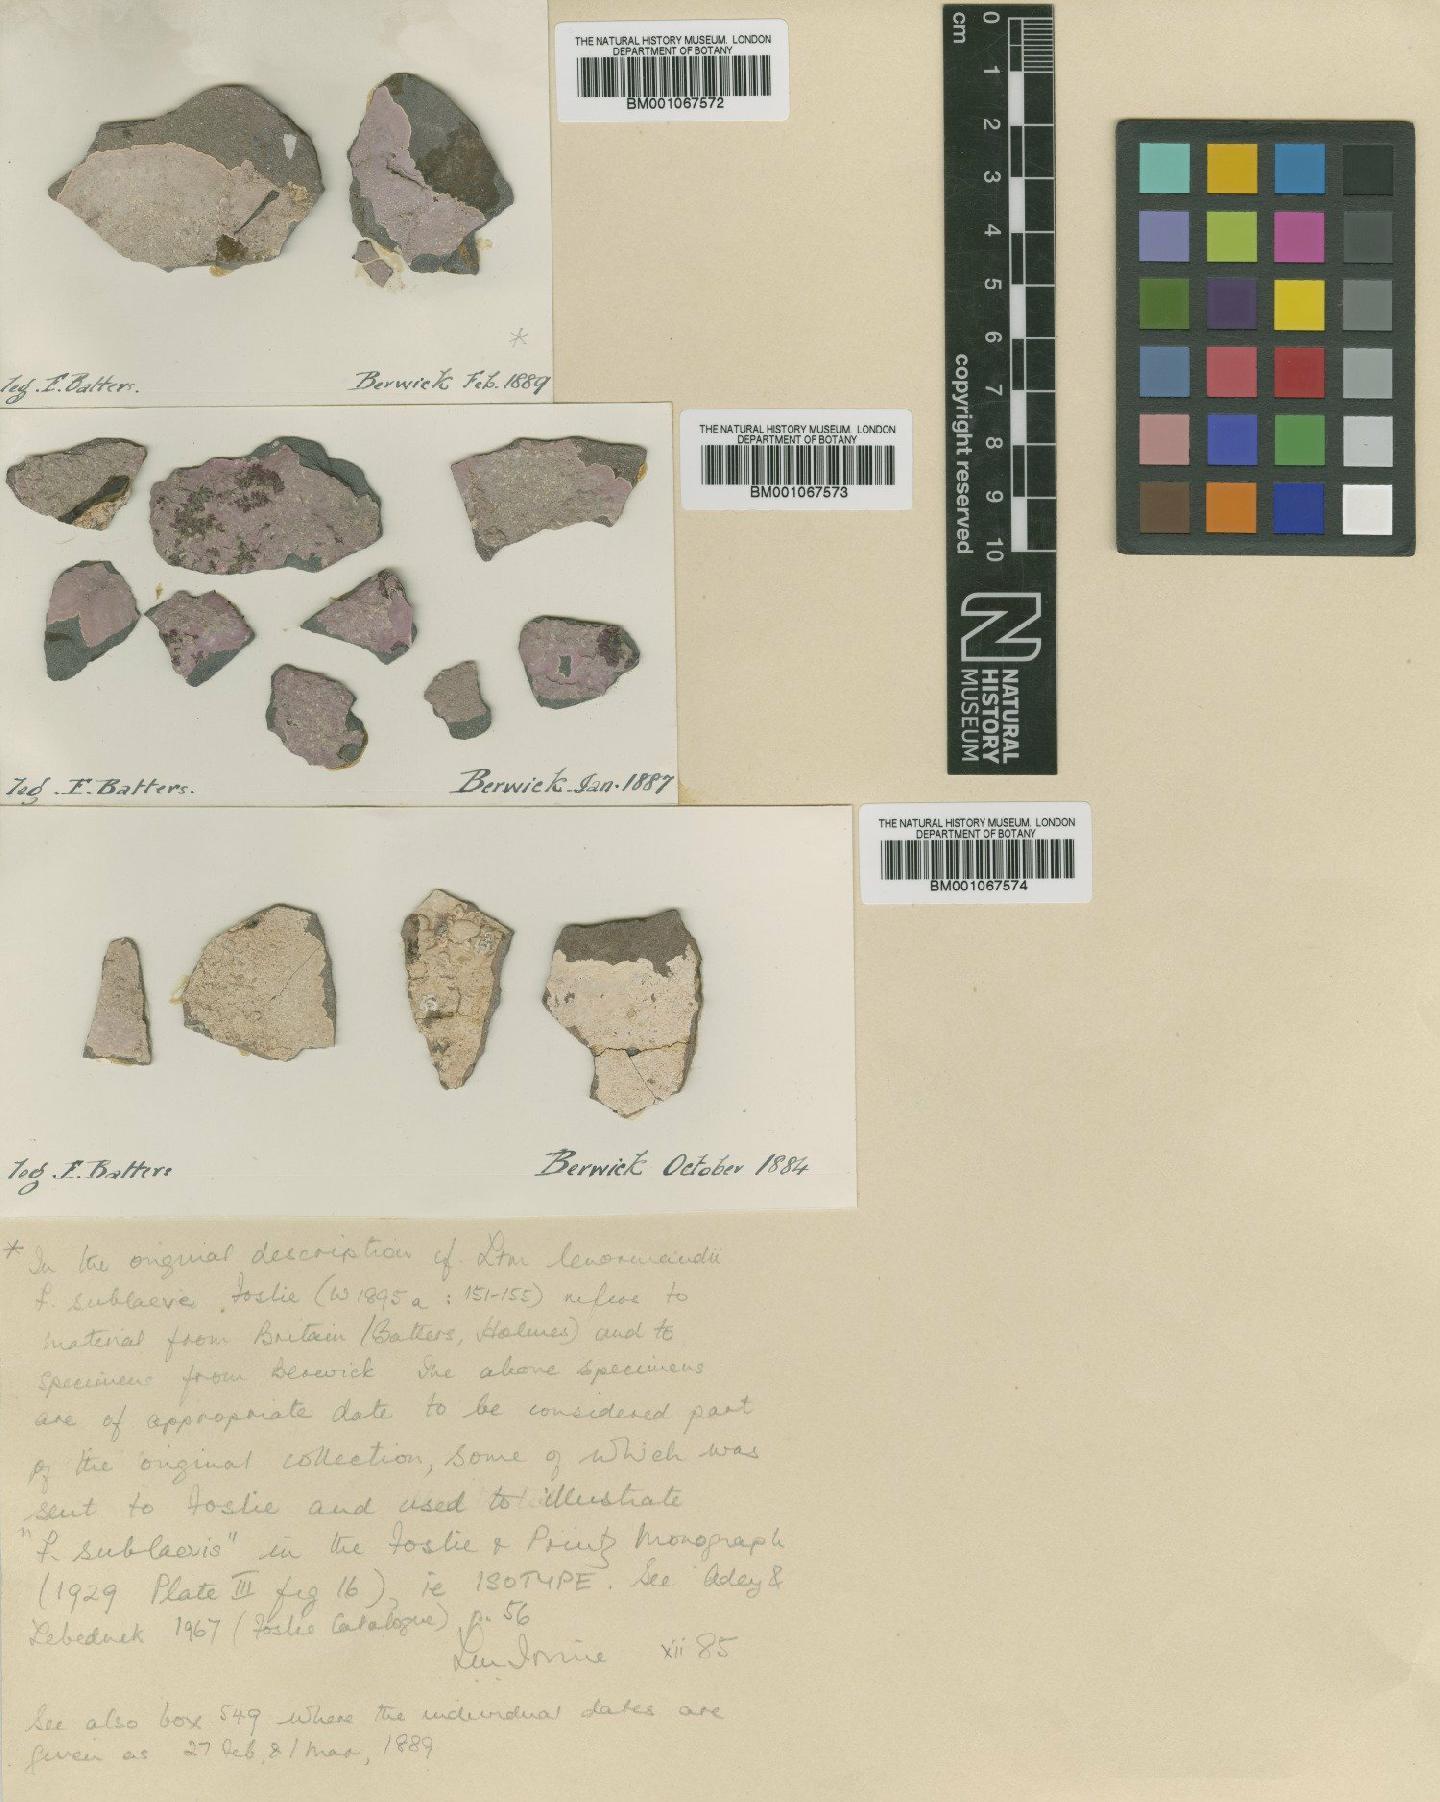 To NHMUK collection (Phymatolithon laevigatum (Foslie) Foslie; Isotype; NHMUK:ecatalogue:2301980)